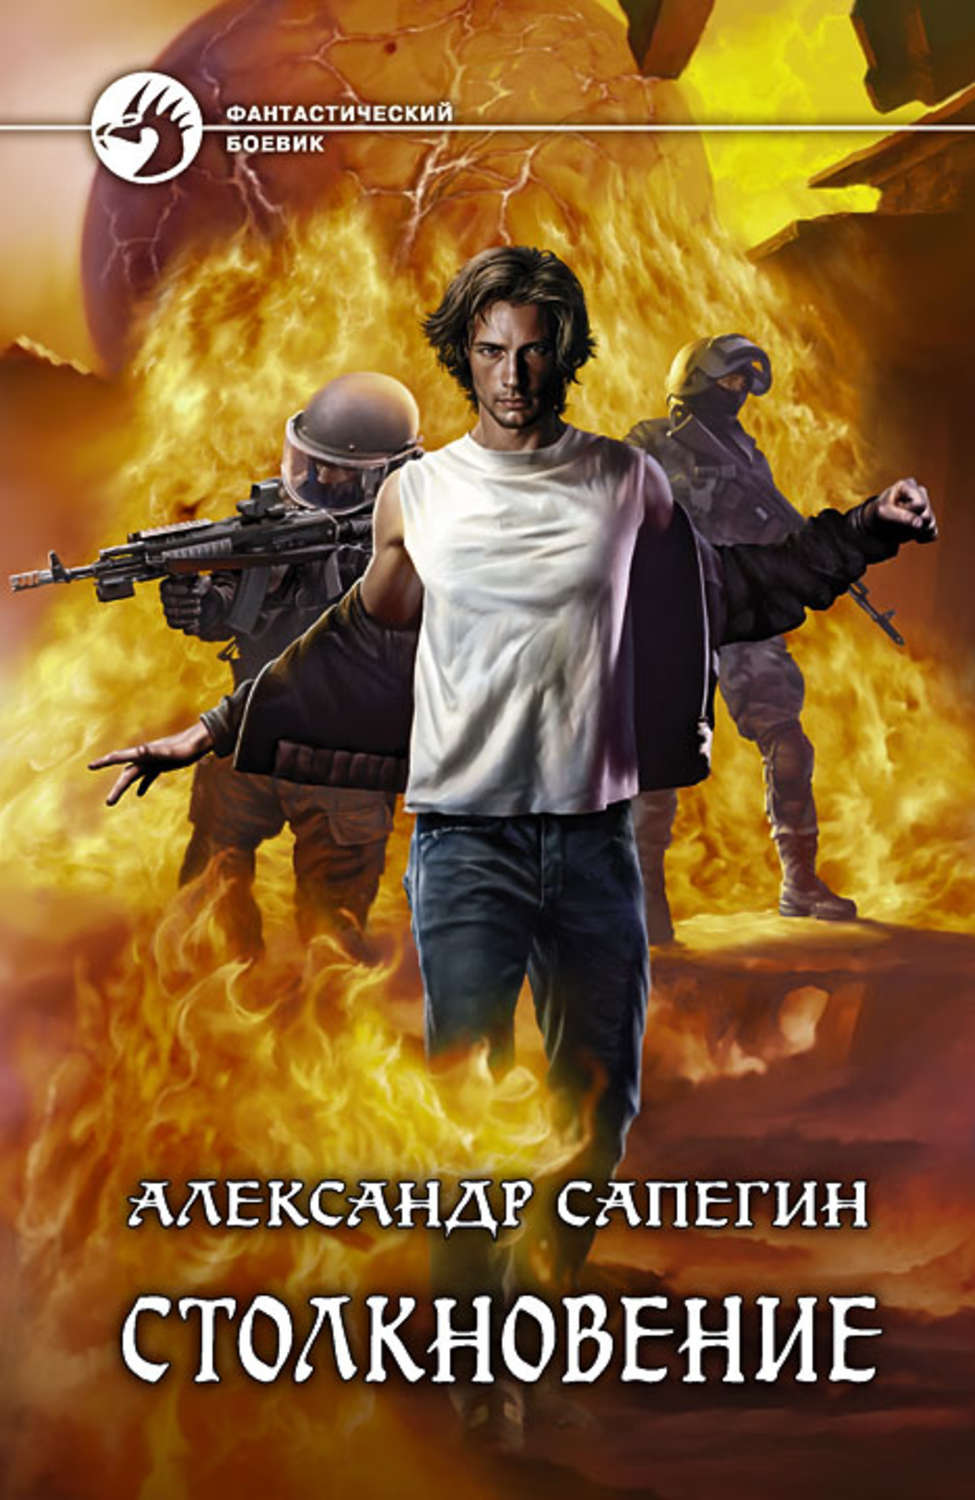 Александр сапегин все книги скачать fb2 бесплатно